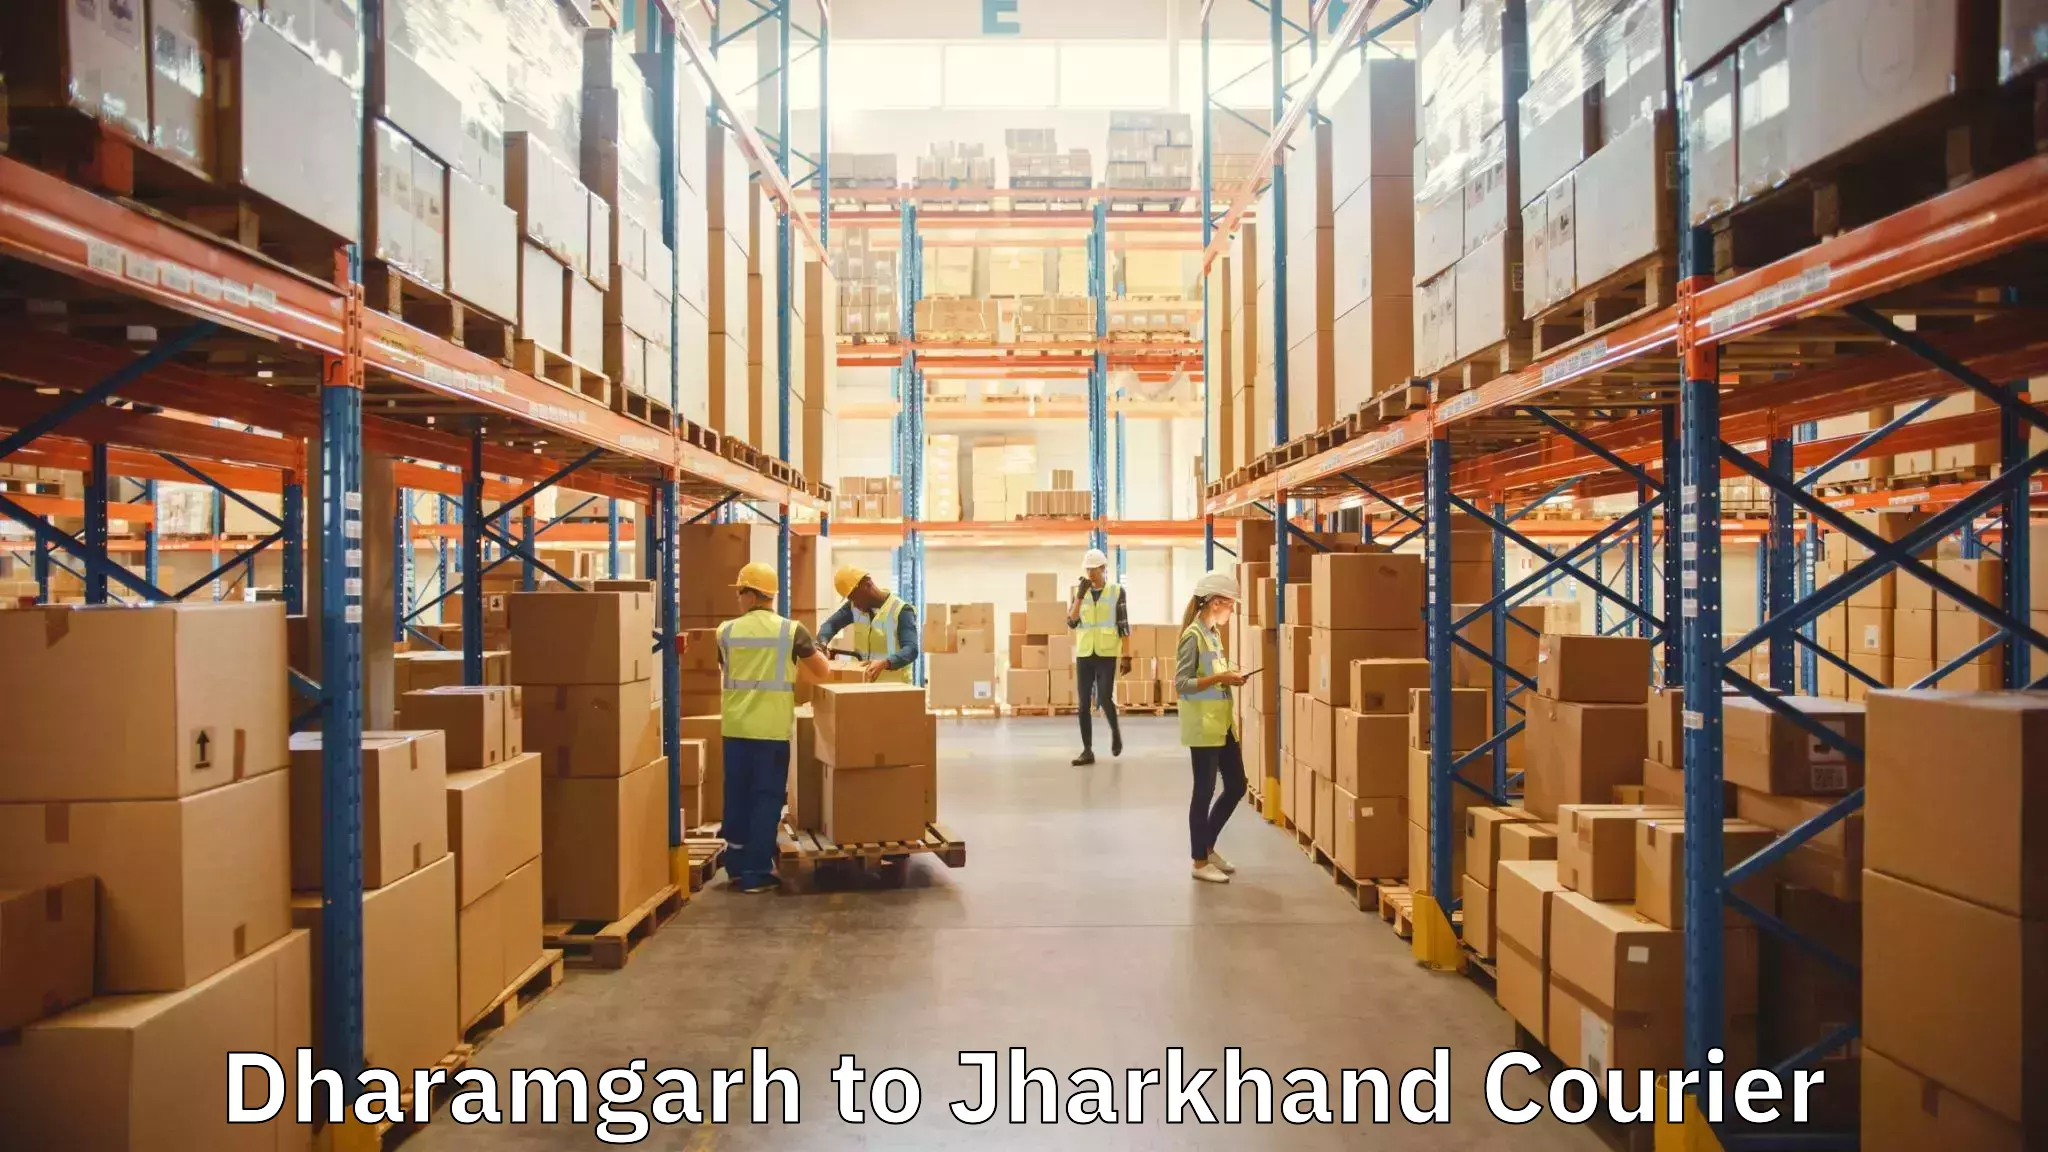 Moving and packing experts Dharamgarh to Godda